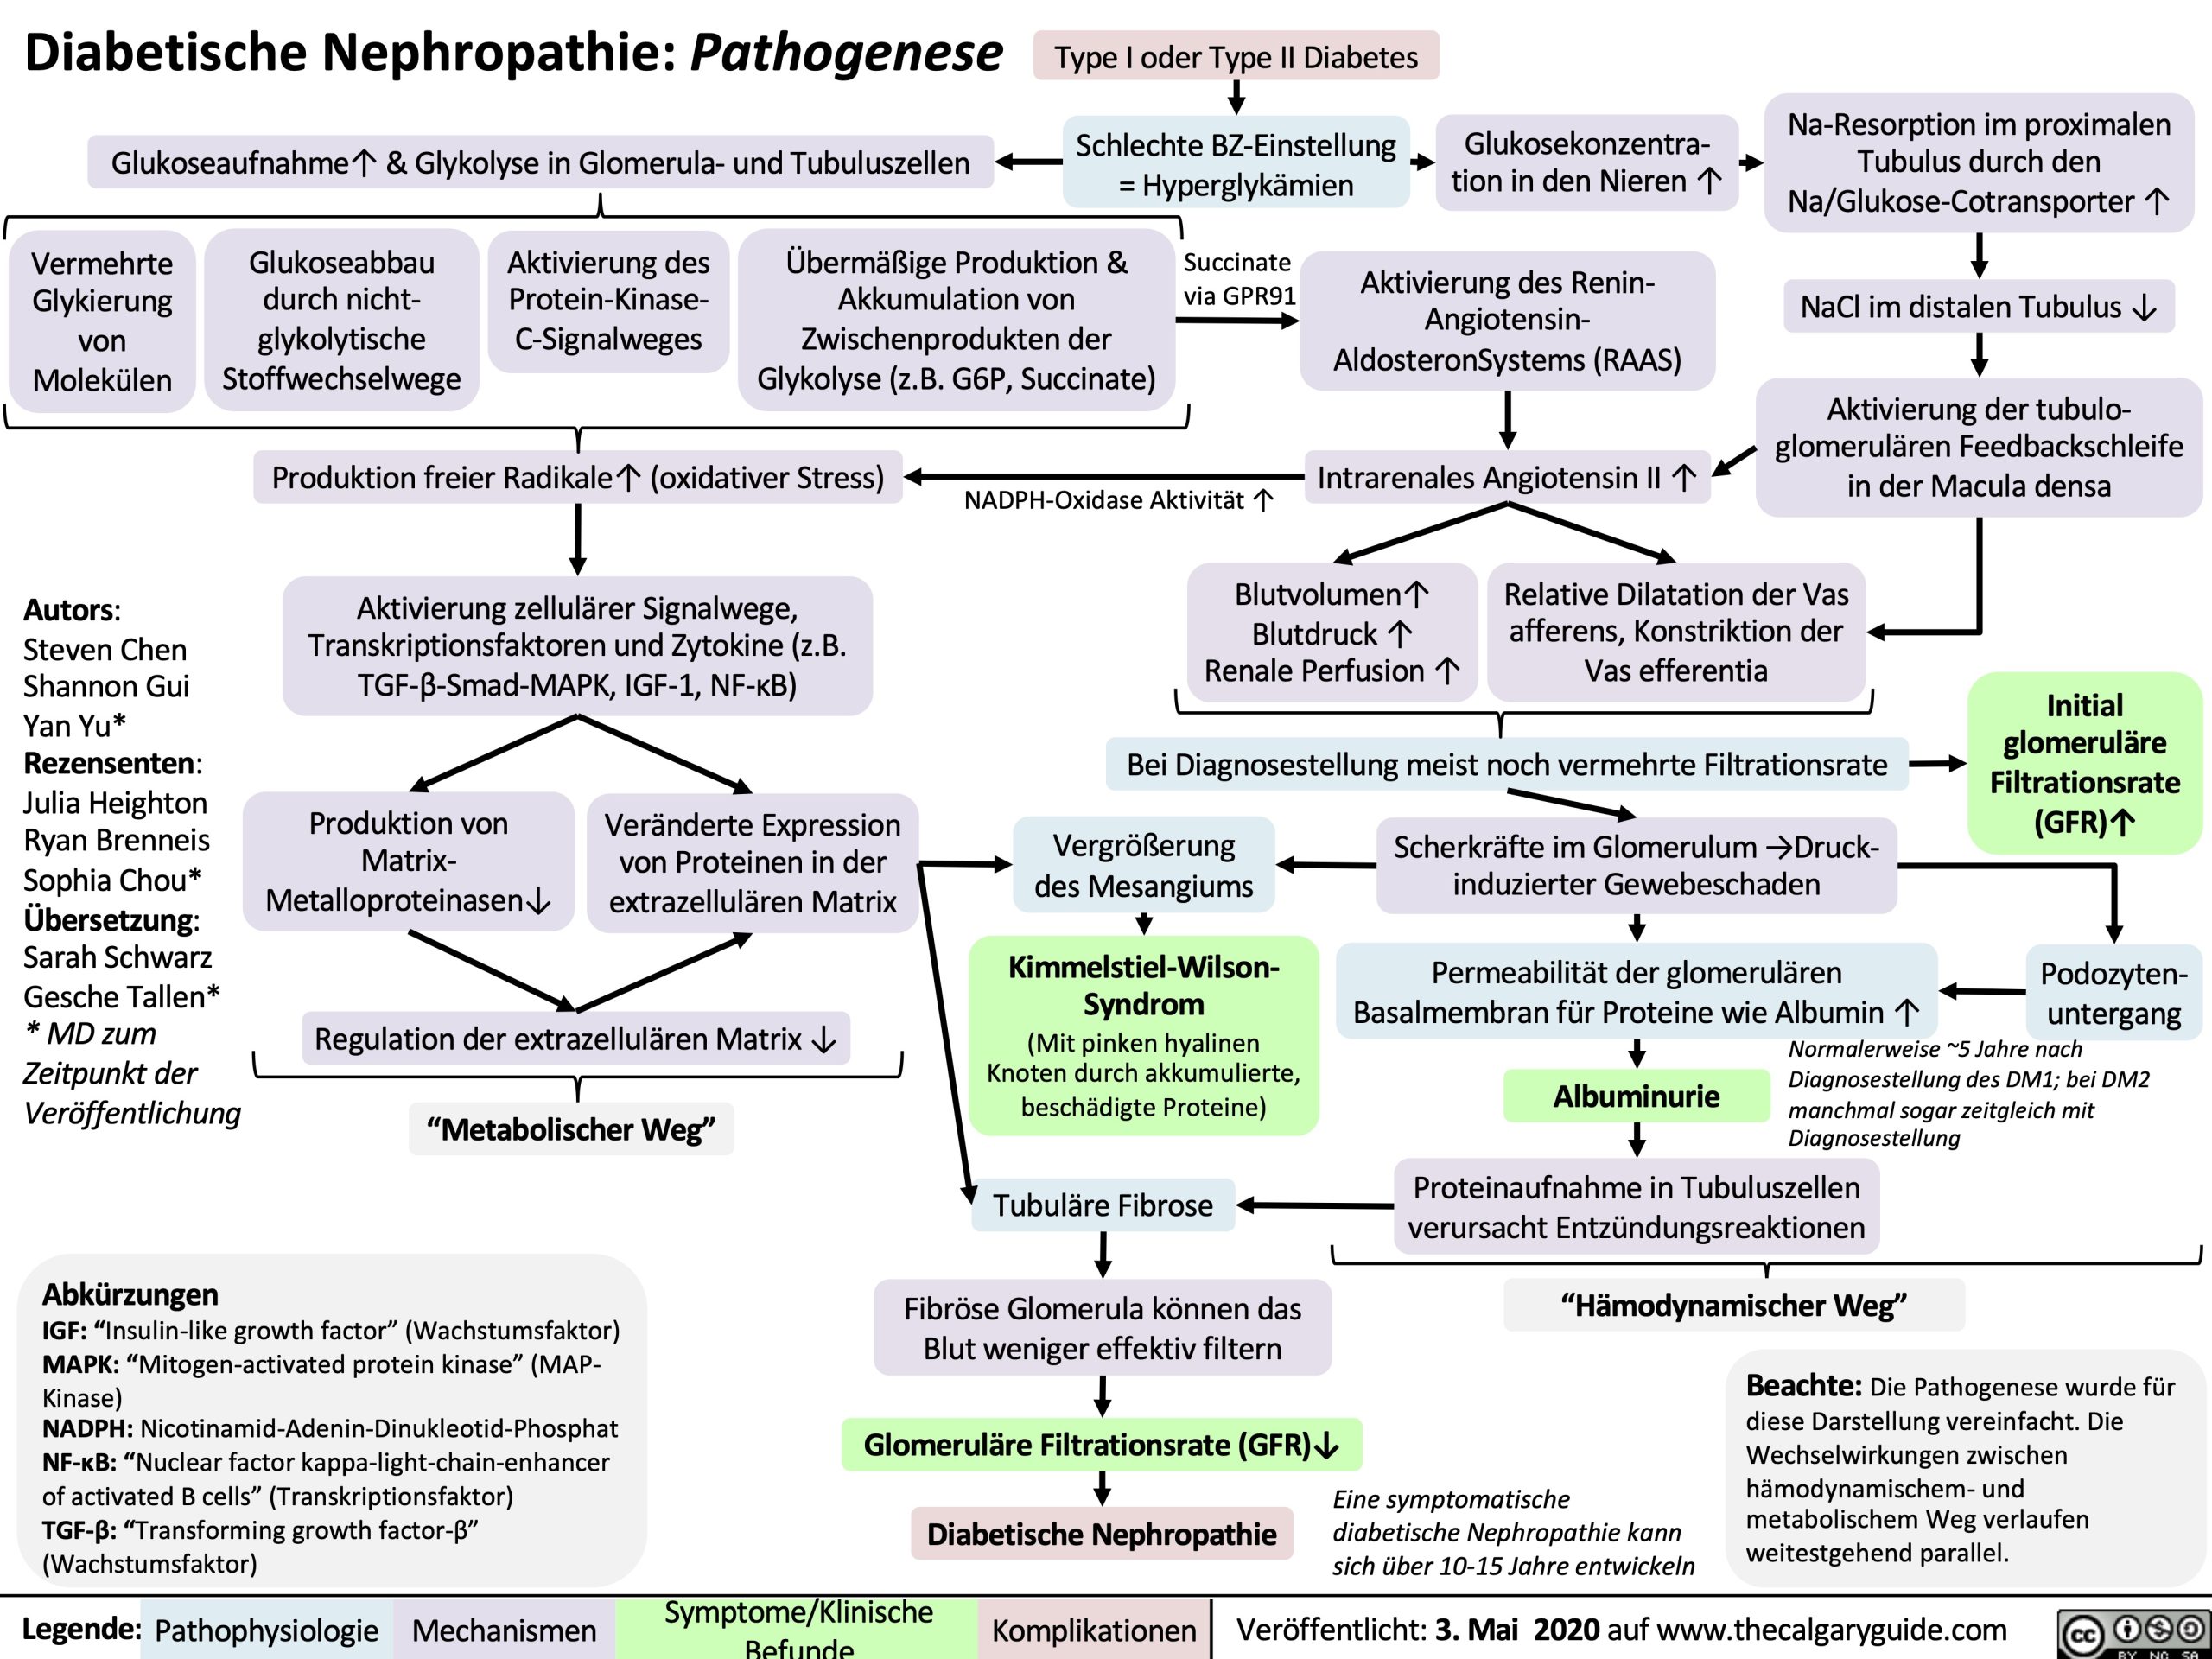 Diabetische Nephropathie: Pathogenese